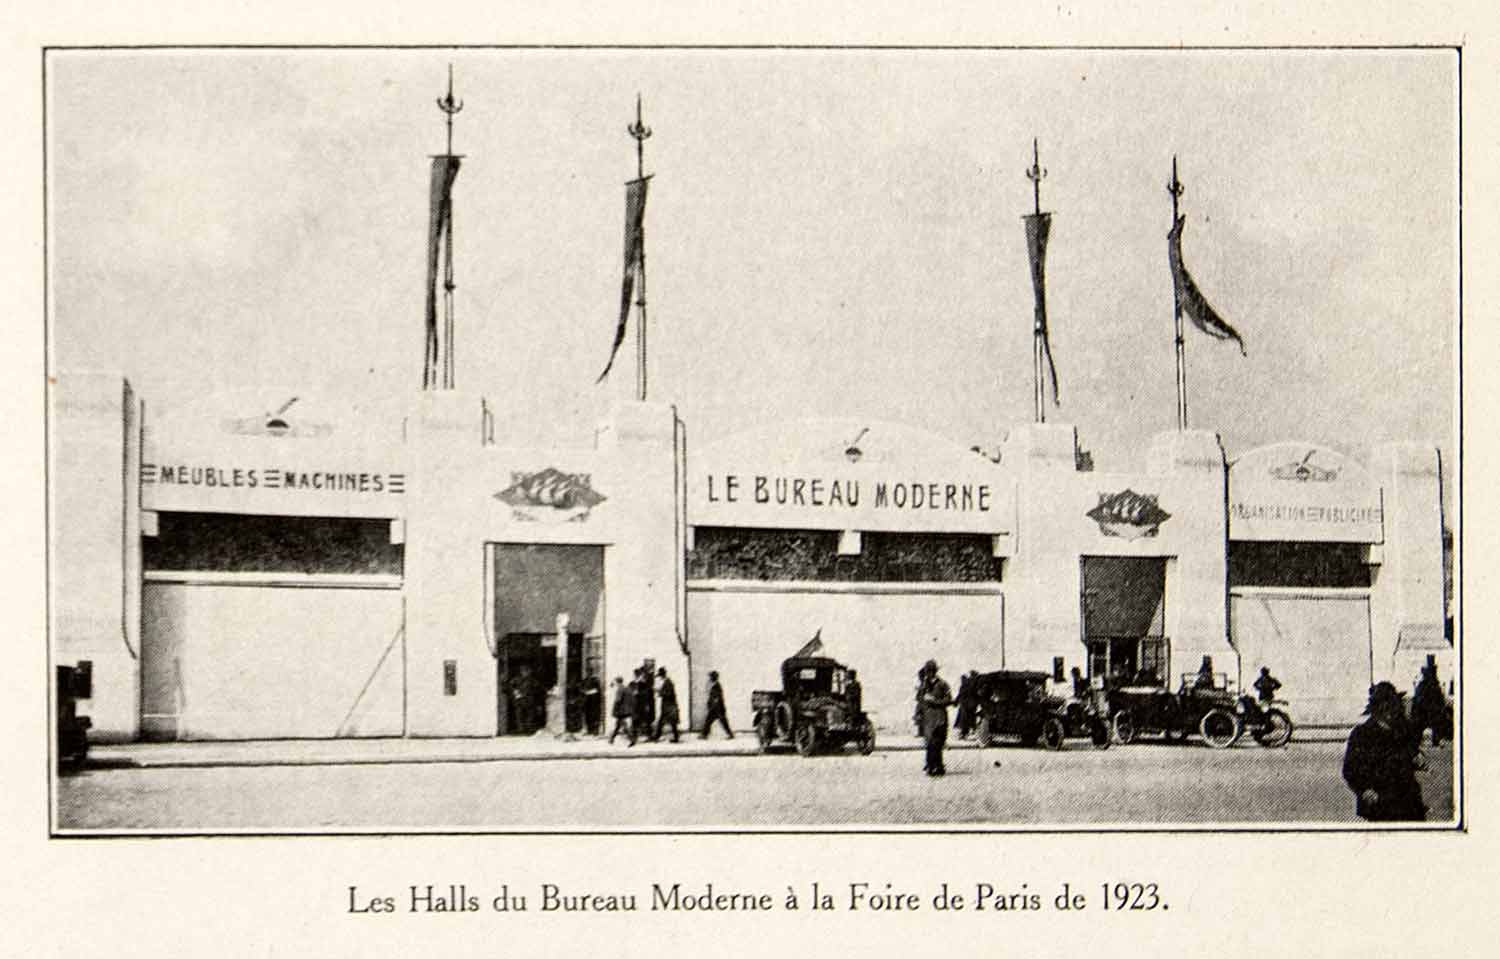 1924 Prints Foire Paris Fair Hall Bureau Moderne French Buildings Street VEN3